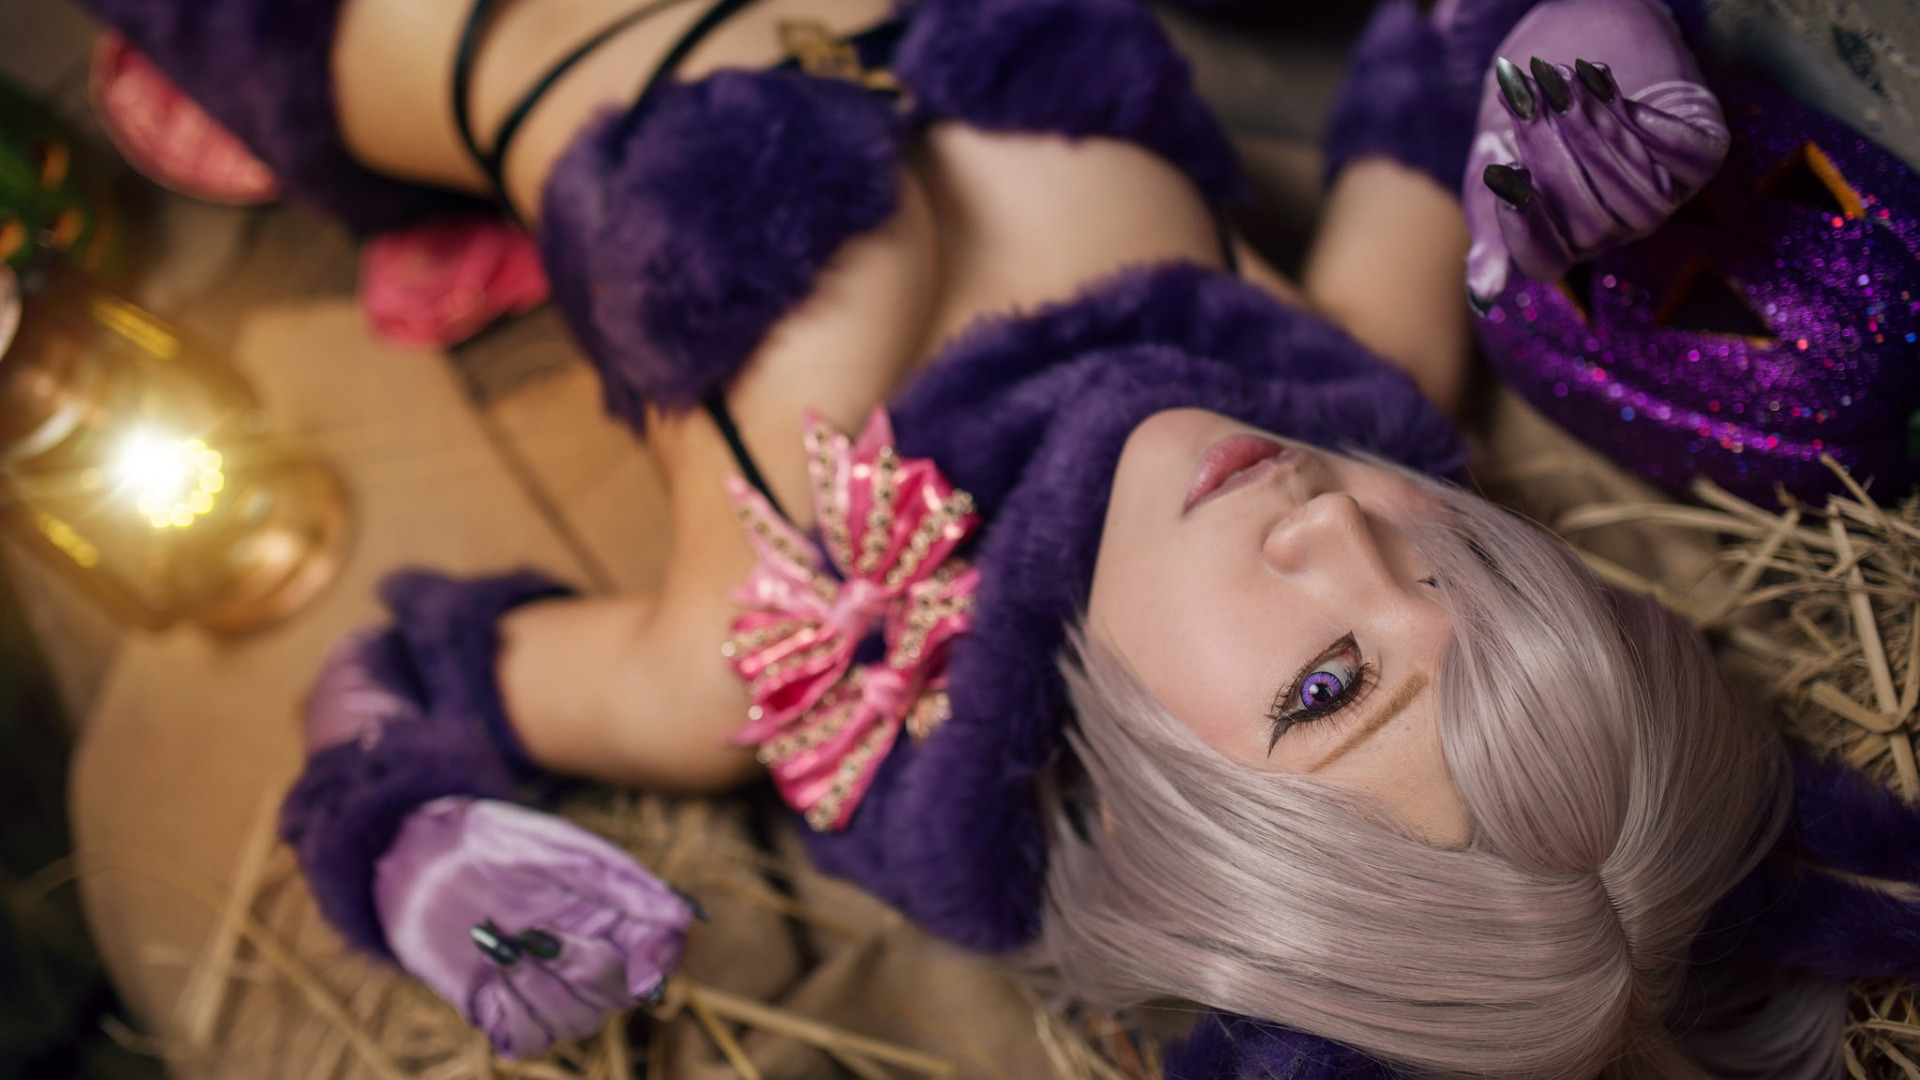 People 1920x1080 women model looking at viewer cosplay blonde boobs purple clothing purple bra fake iris ash blonde purple eyes hair in face 煙-HedY | FB@misshedy